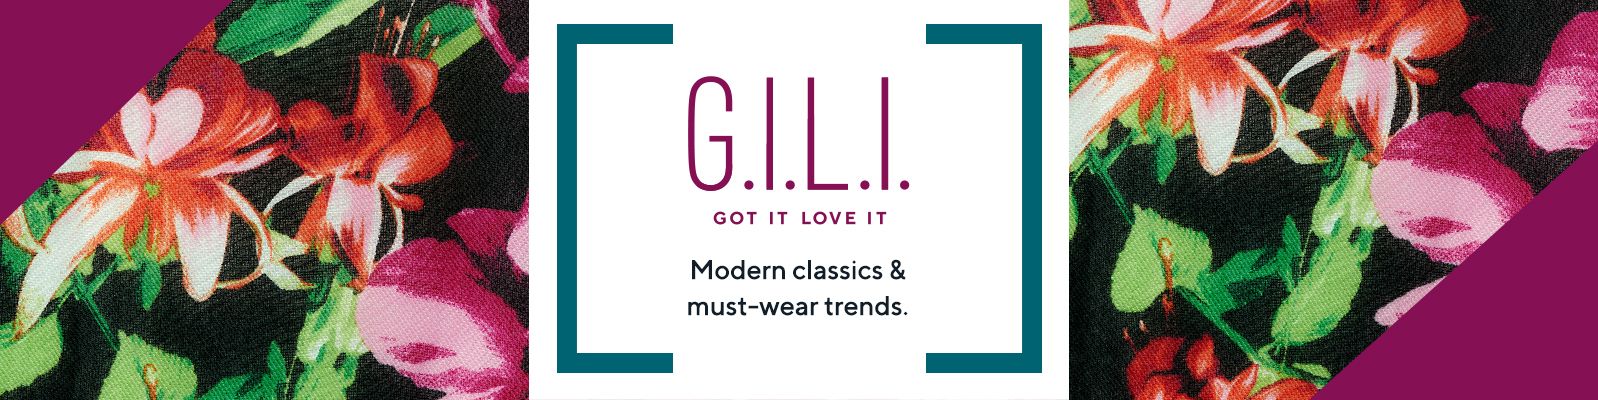 G.I.L.I. Got It. Love It.®  Modern classics & must-wear trends.